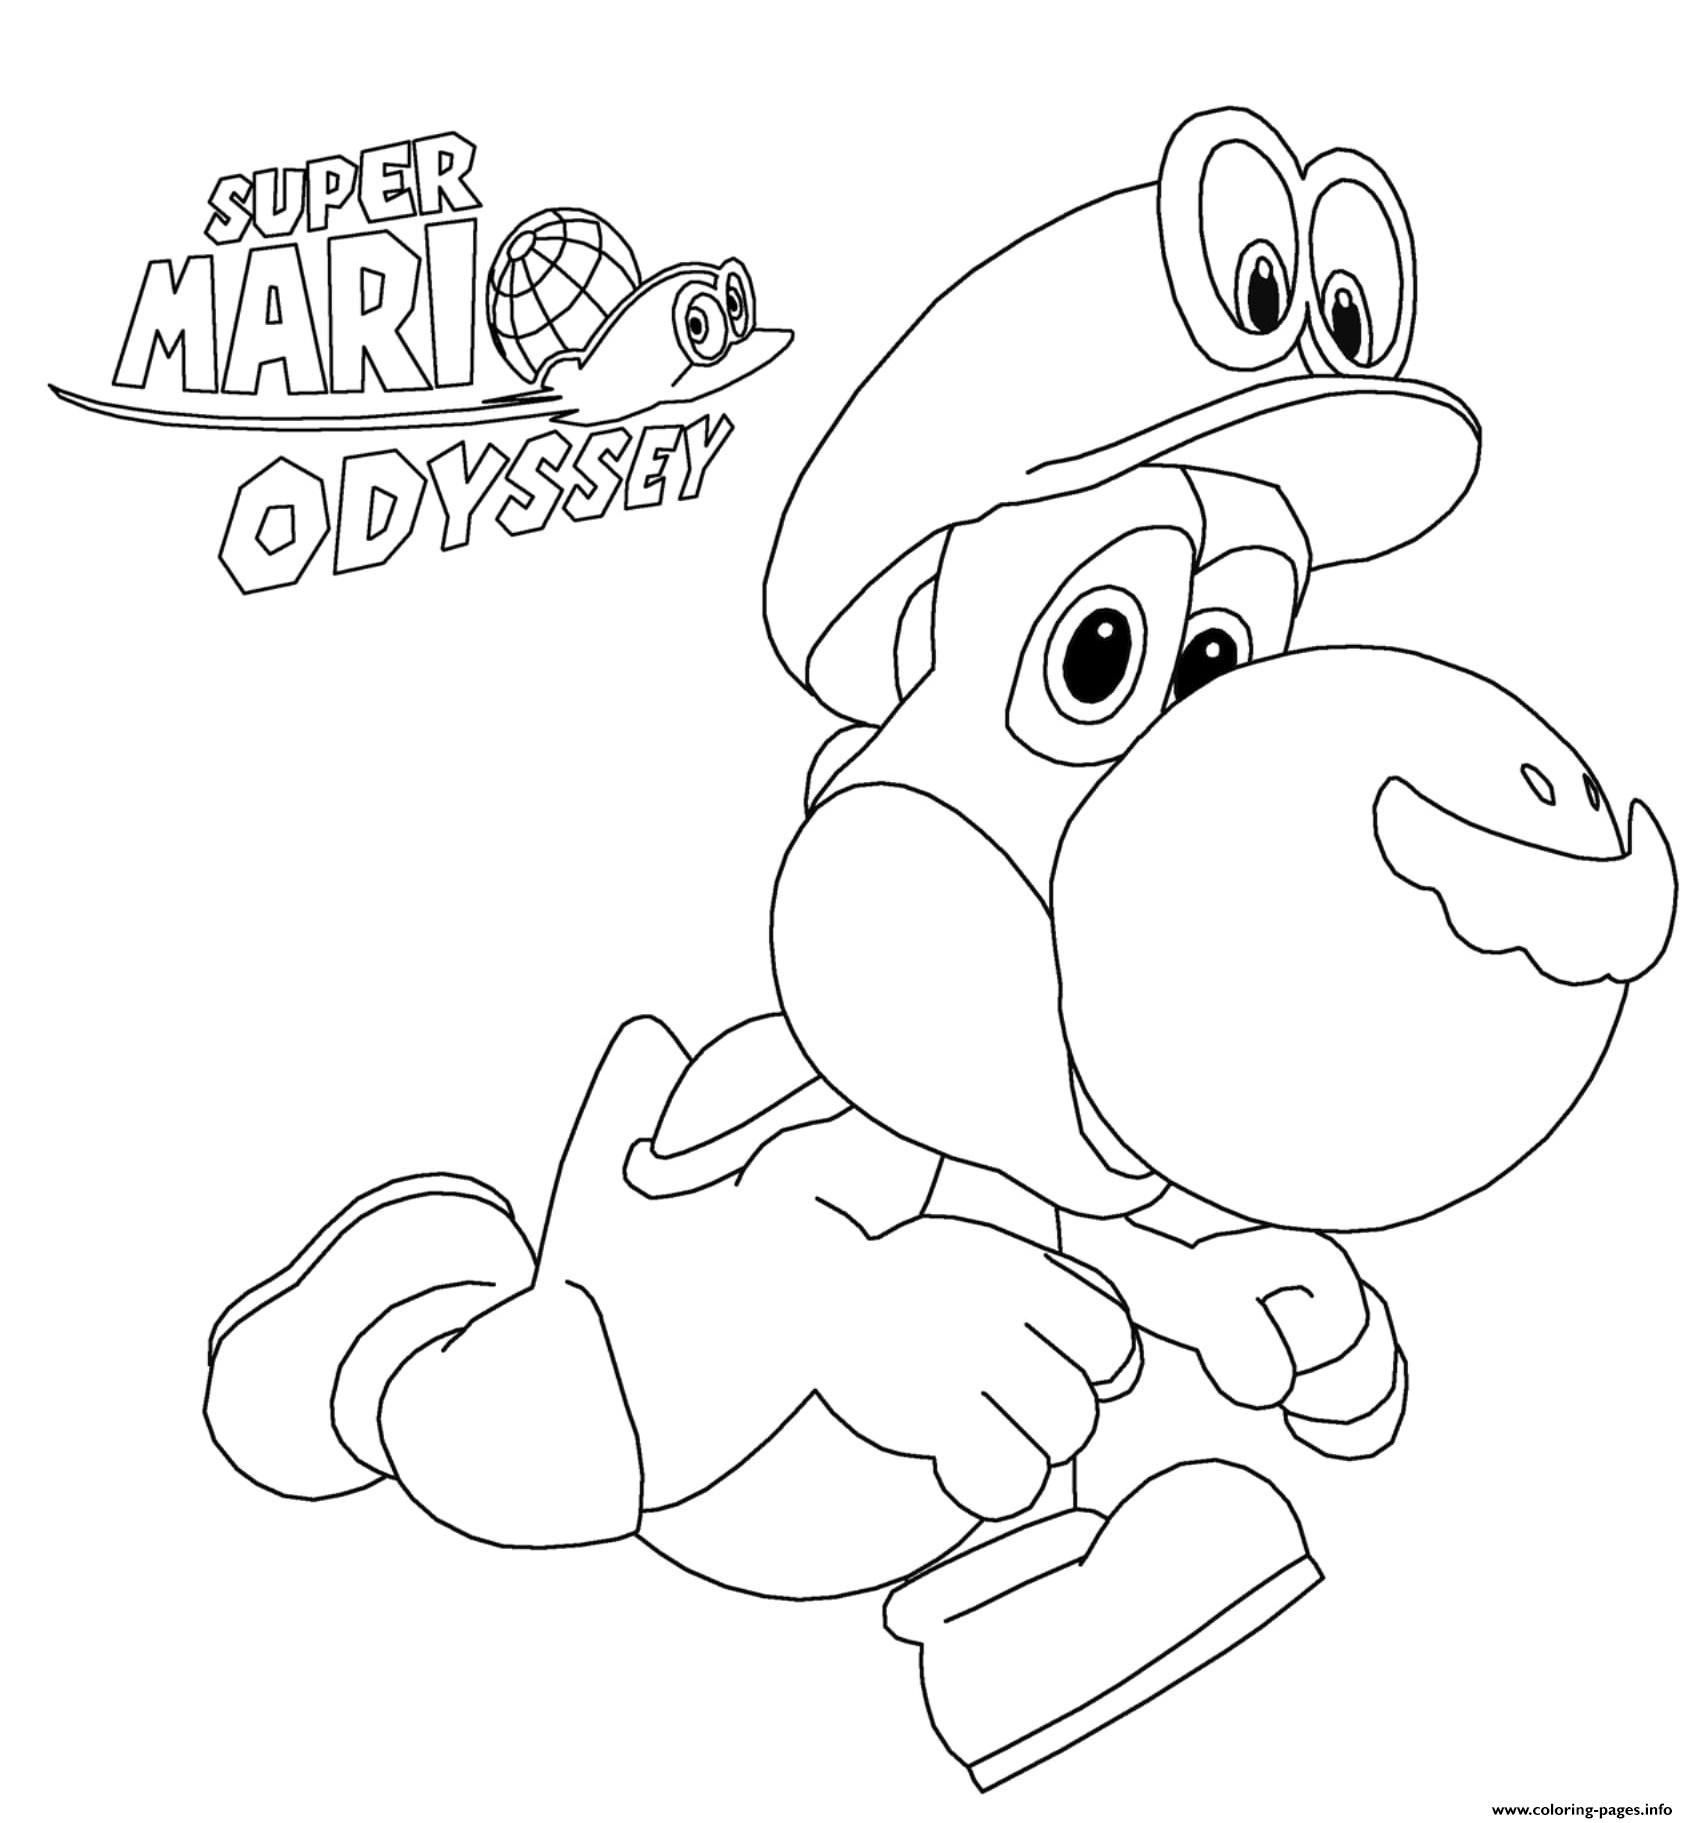 Super Mario Odyssey Yoshi Nintendo Coloring Pages Printable